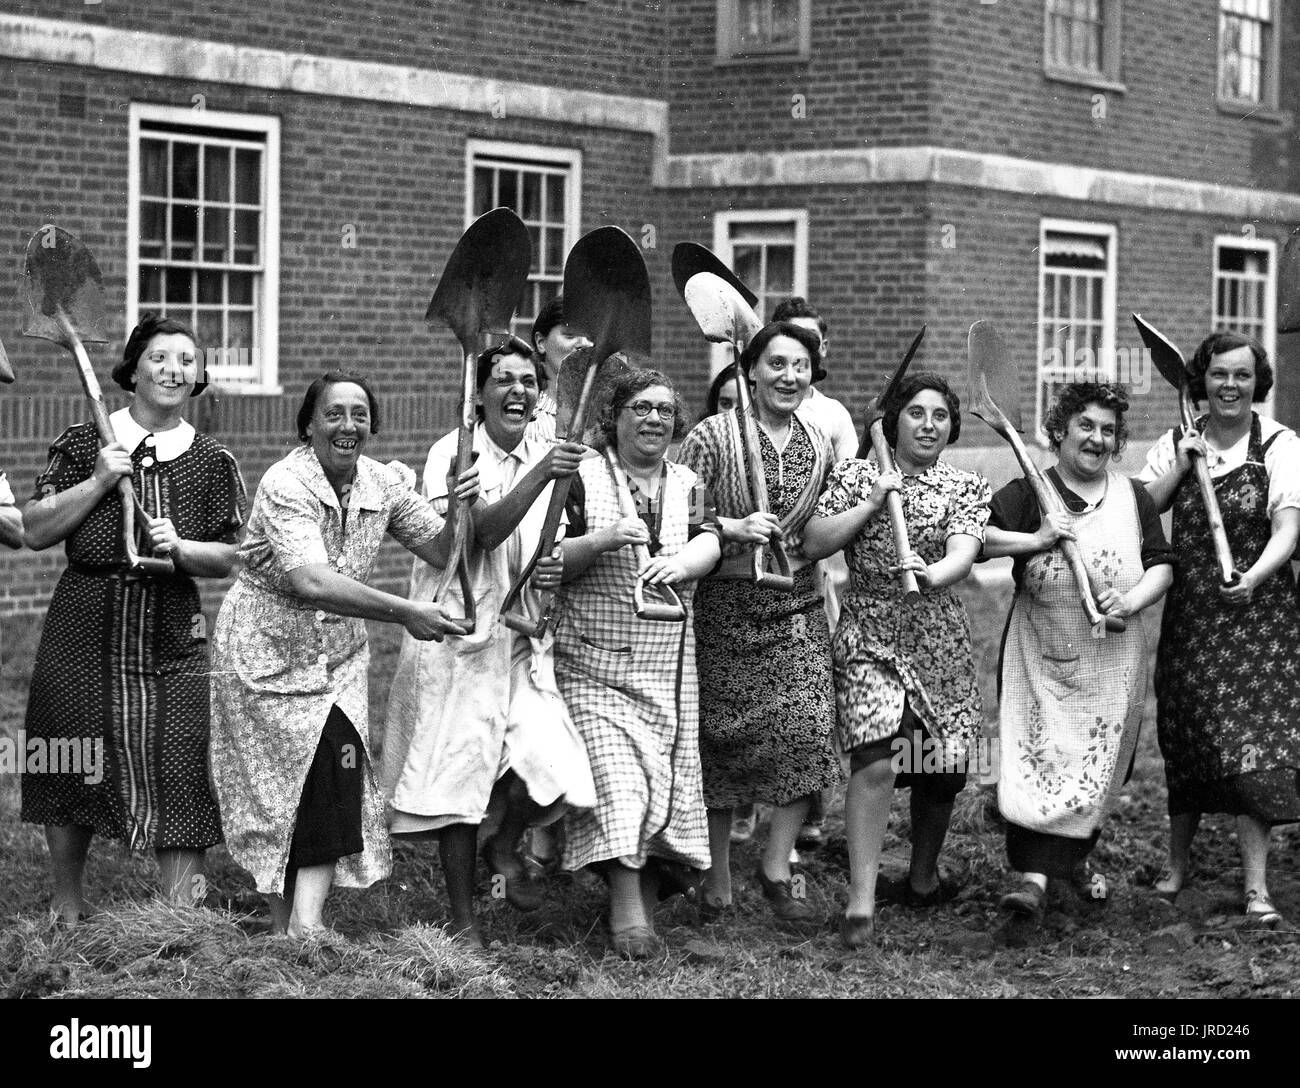 En train de fouiller pour la victoire ! Femmes avec des pique-nades prêtes à l'action pendant la Seconde Guerre mondiale Londres 1940s. Creusez pour la victoire les Londoniens deuxième Guerre mondiale Banque D'Images